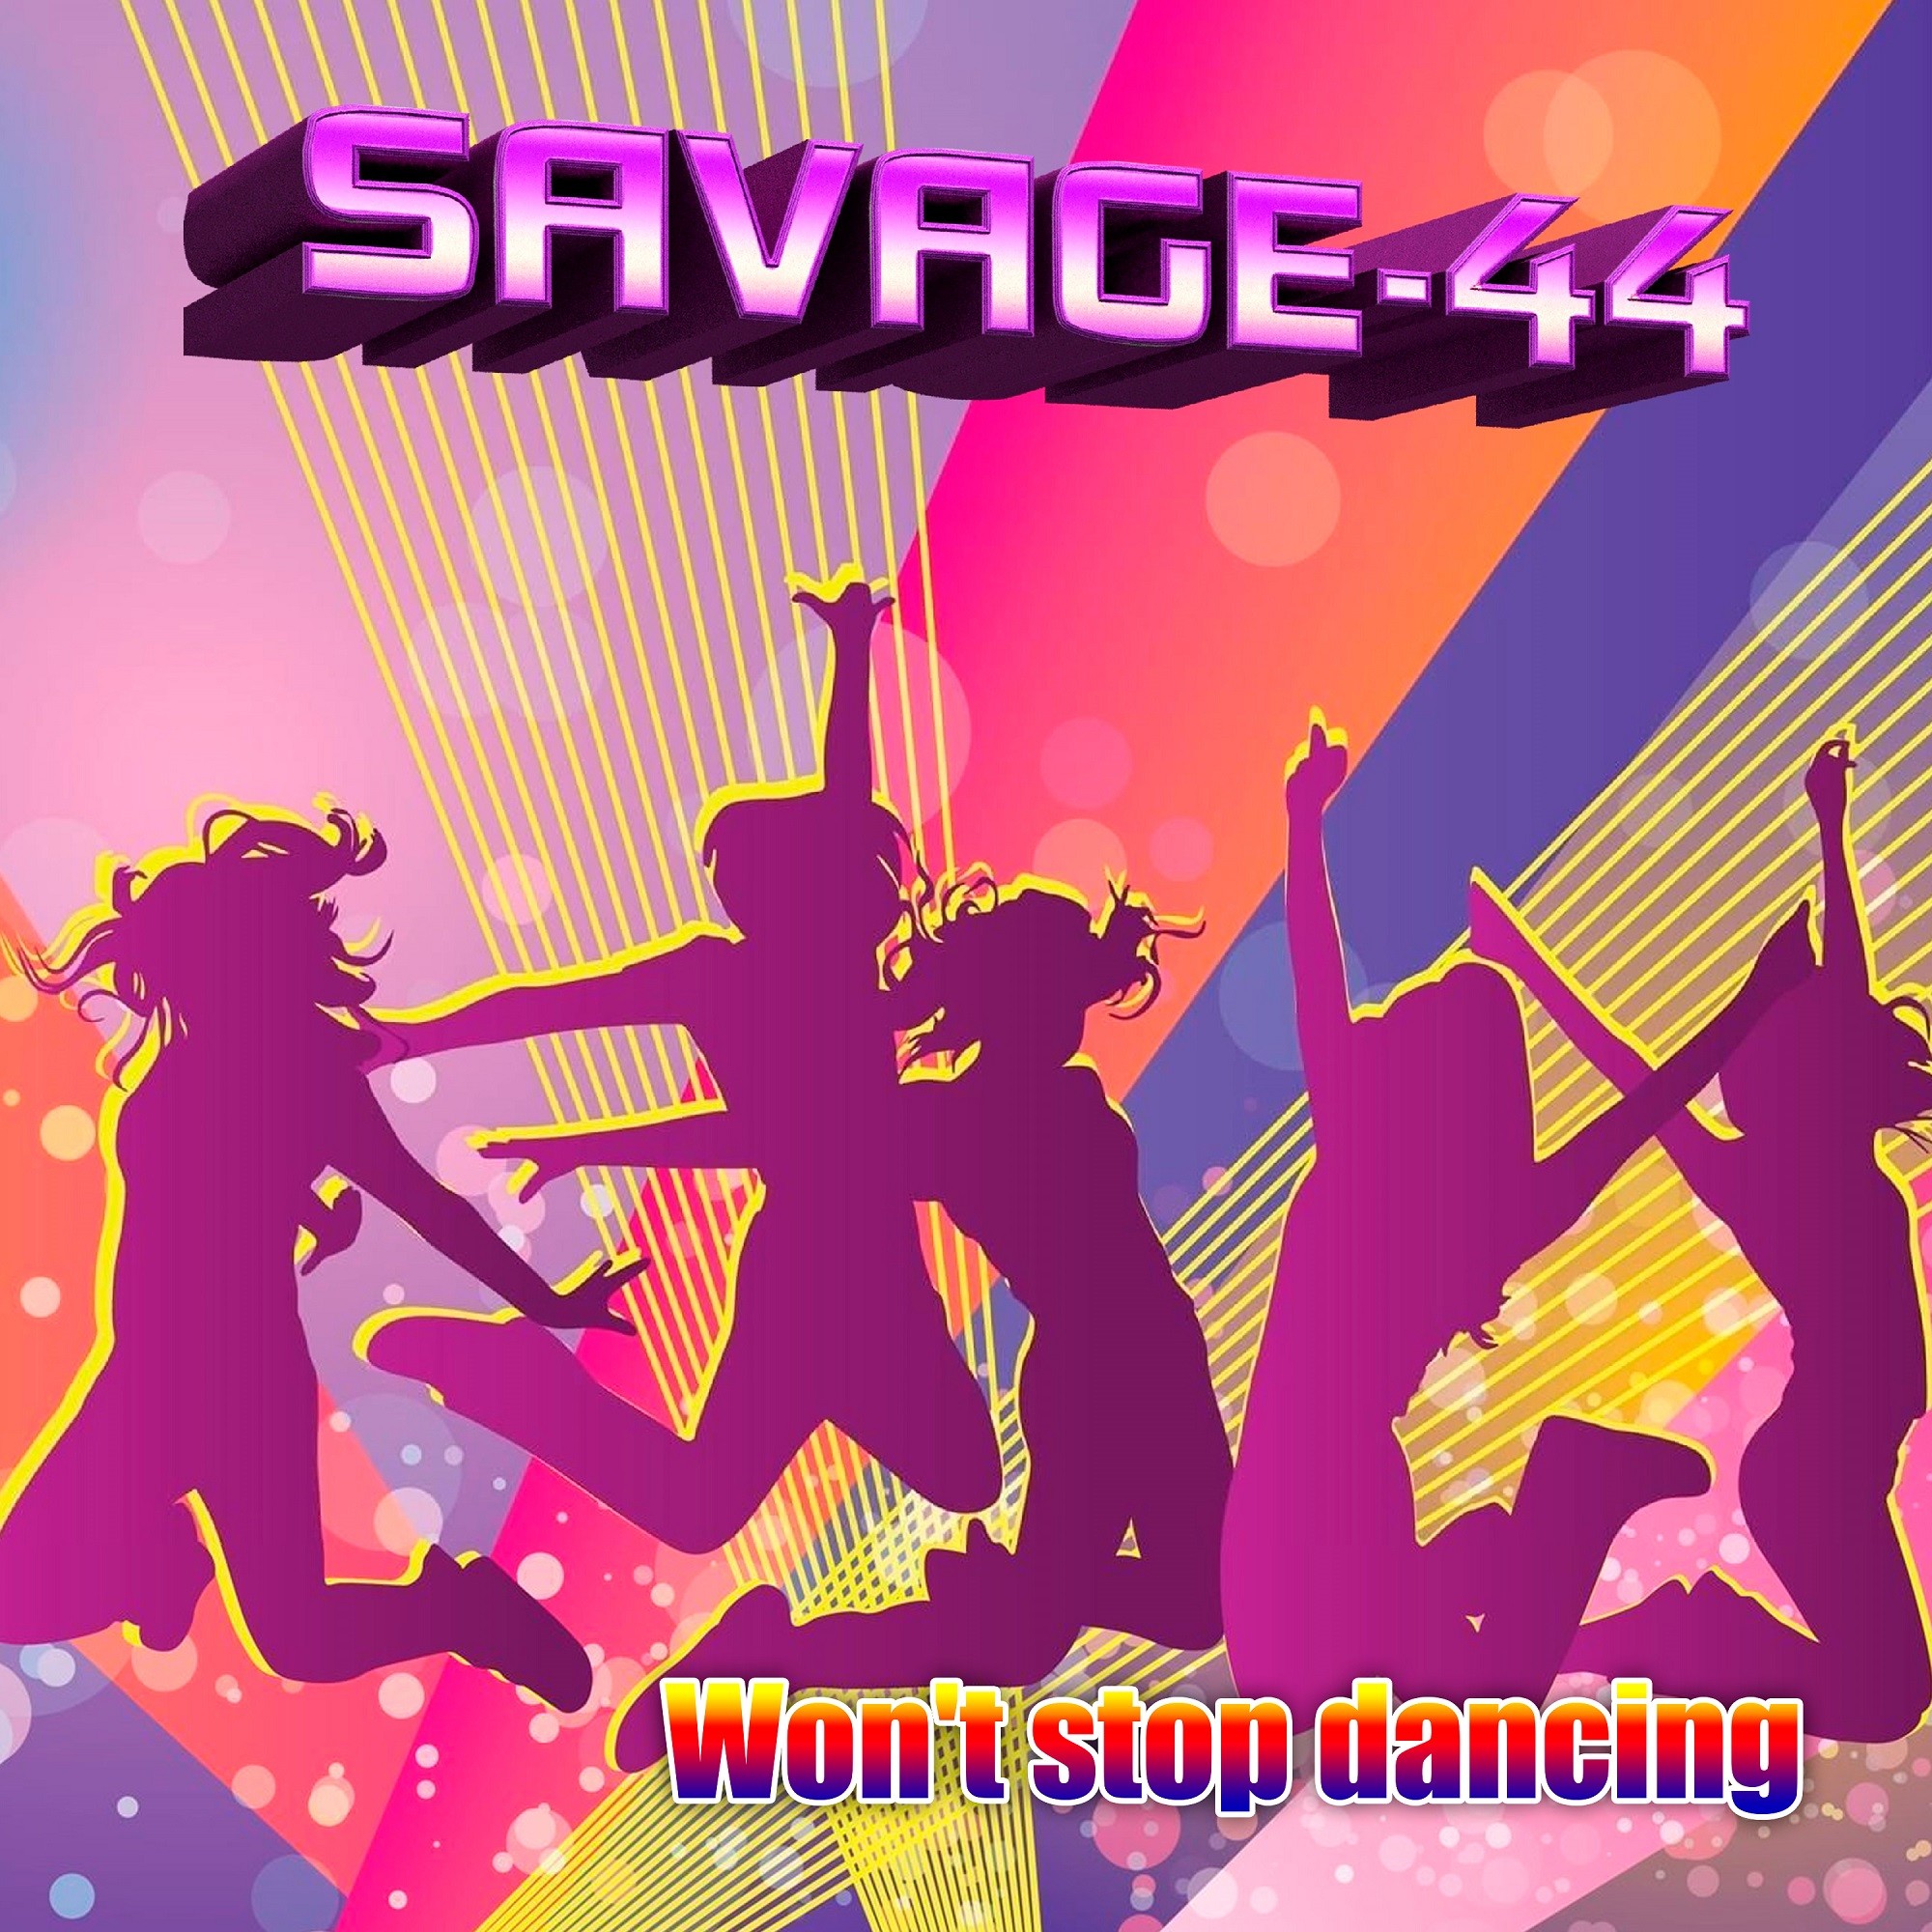 Молодежь вперед. Savage 44 dance party